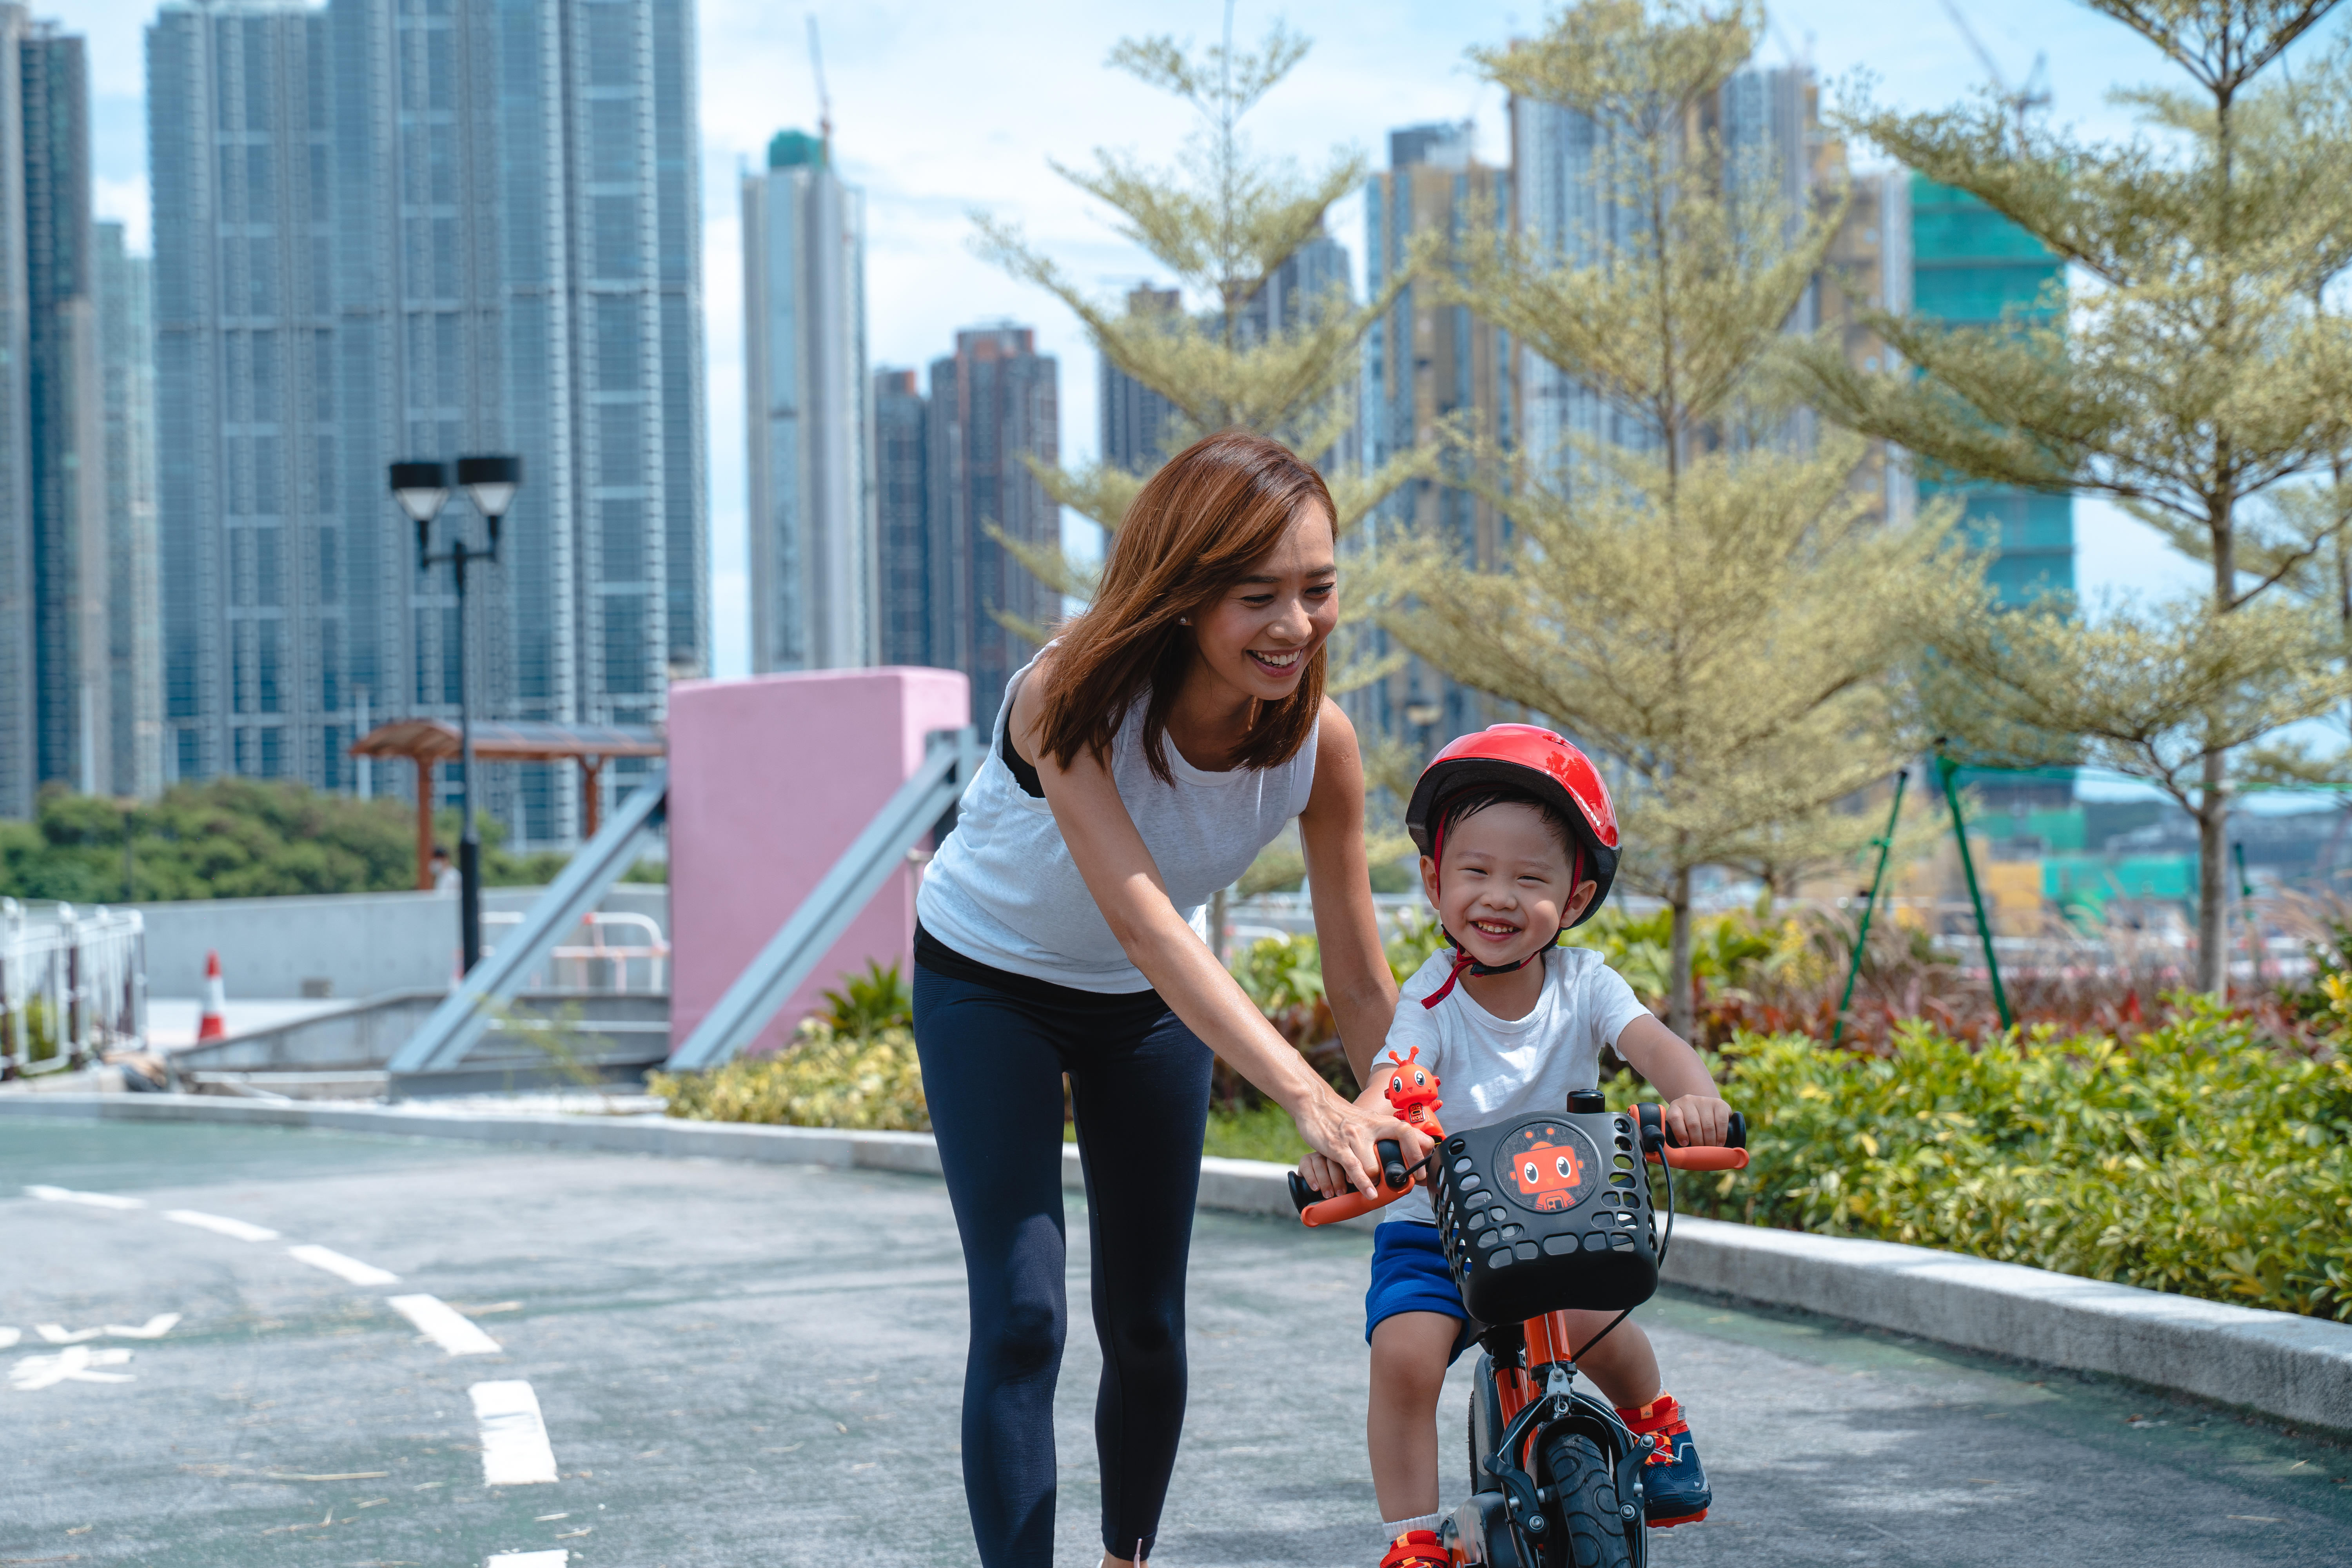 選擇合適的尺寸對孩子操控單車更容易